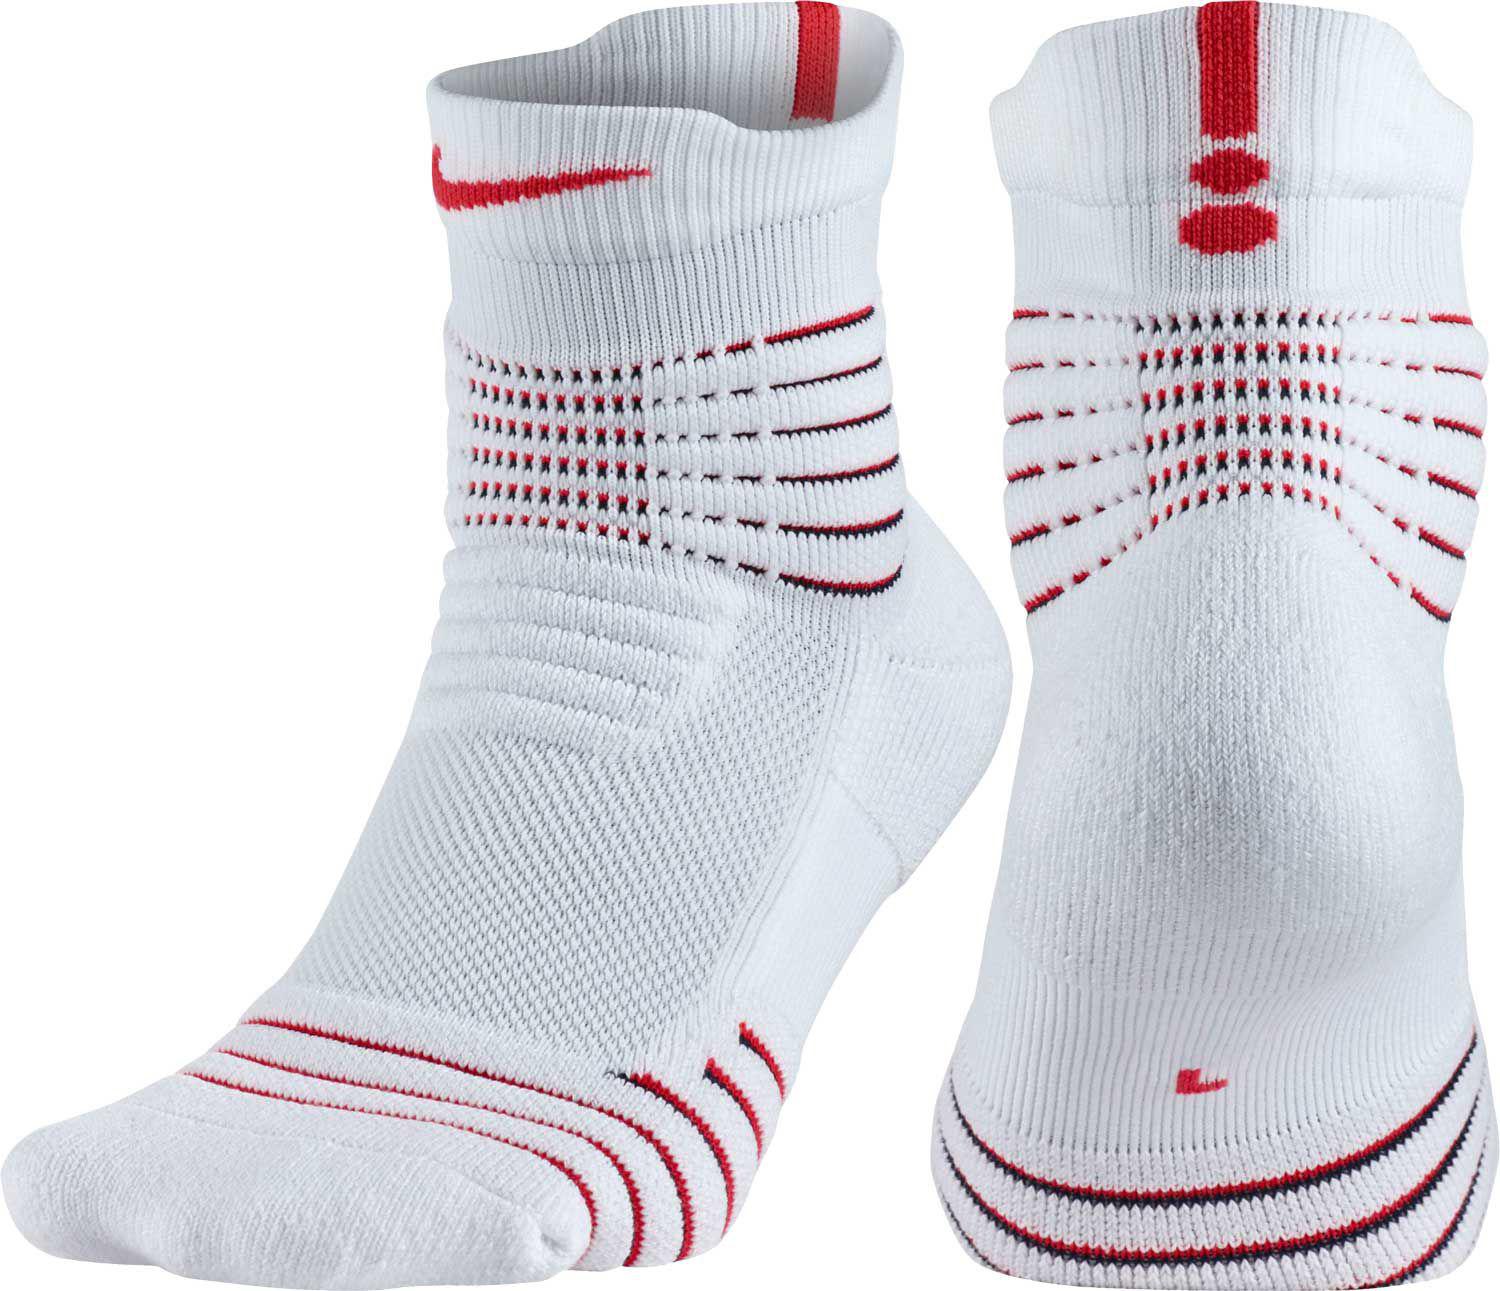 Quarter Basketball Socks for Men - Lyst